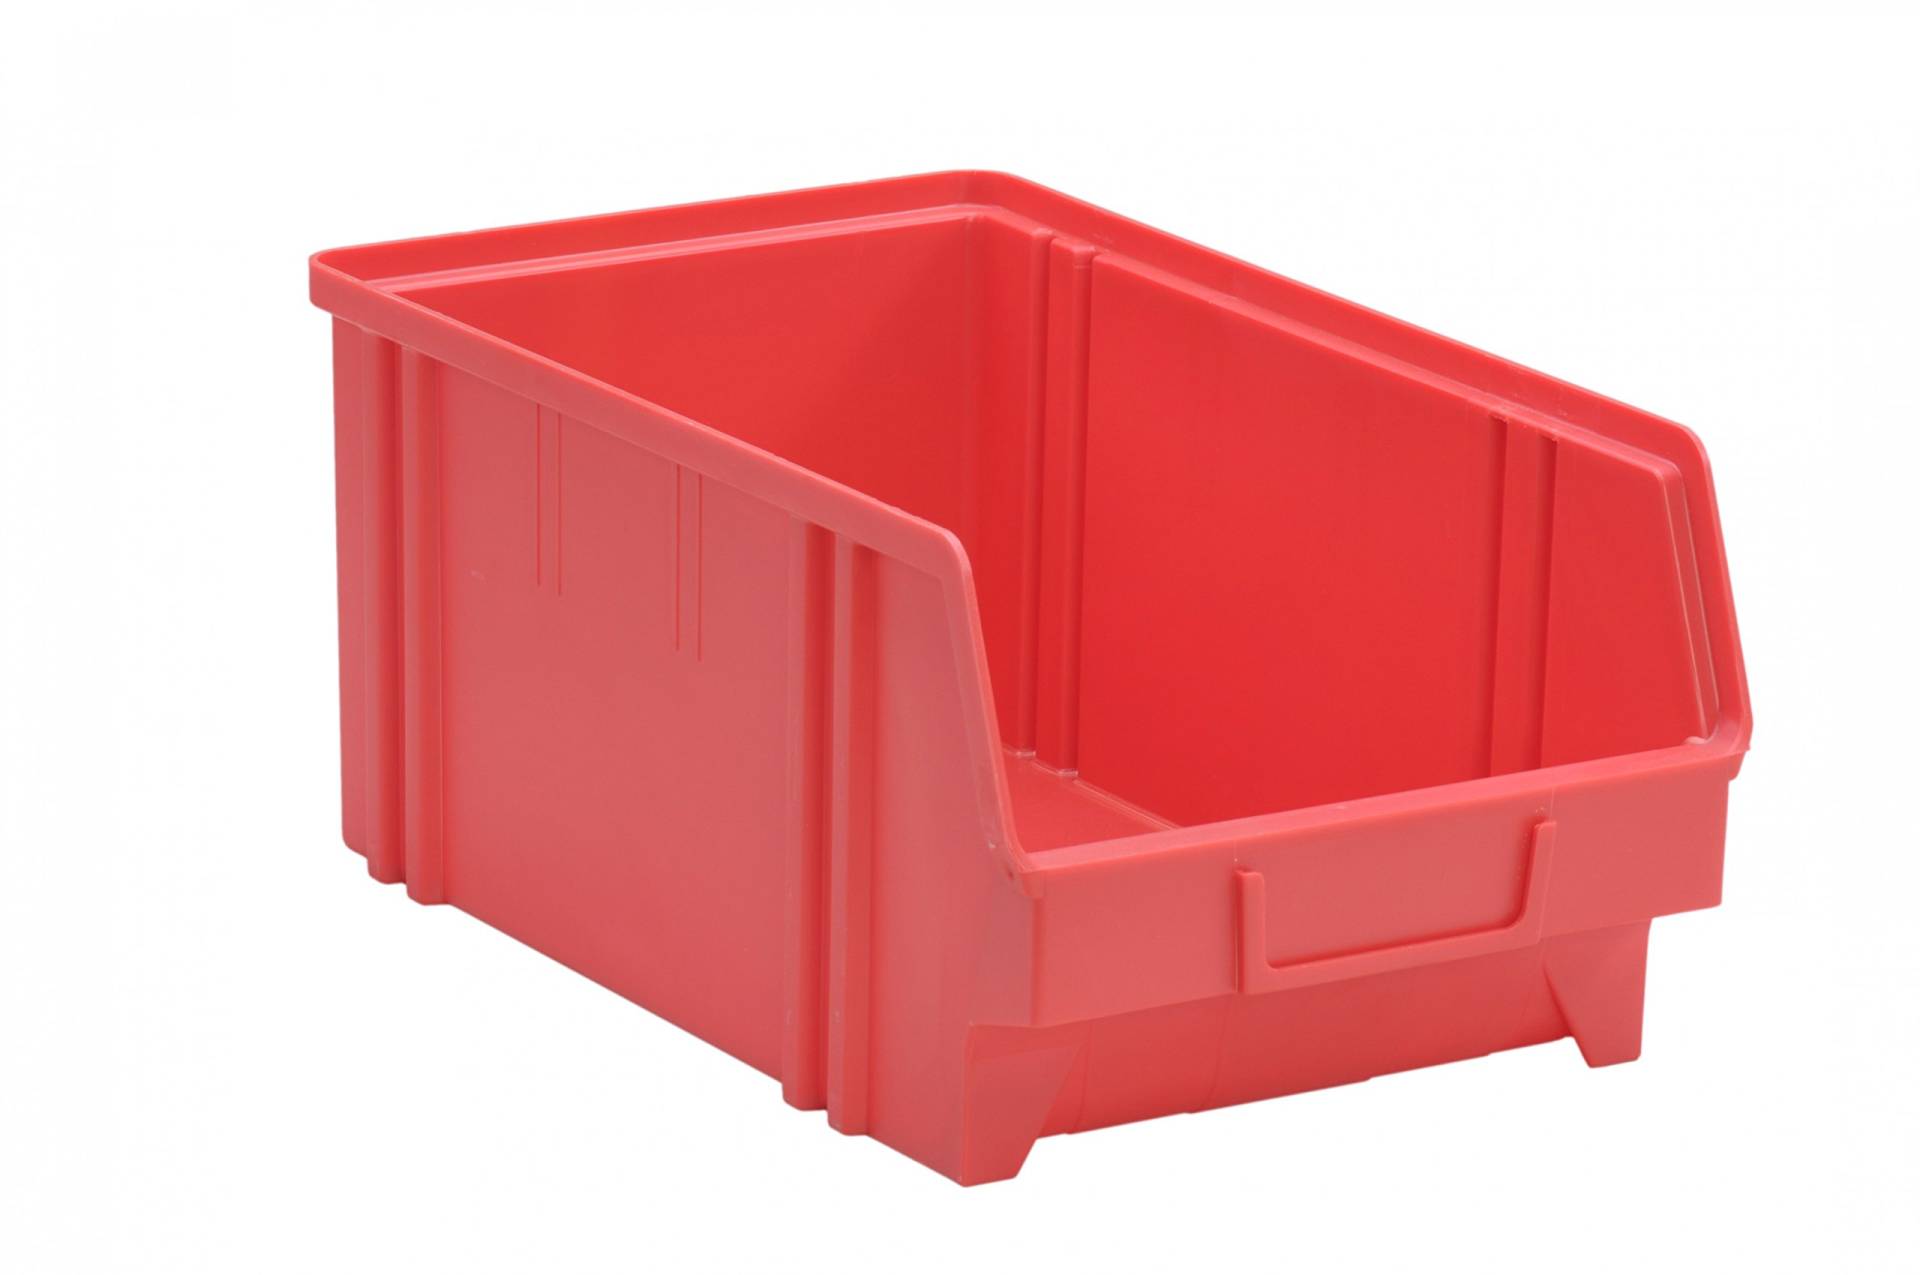 hünersdorff Sichtbox / Stapelbox / Lagerbox in Größe 4, aus Polystyrol, hohe Formstabilität und Belastbarkeit, Farbe: Rot von hünersdorff